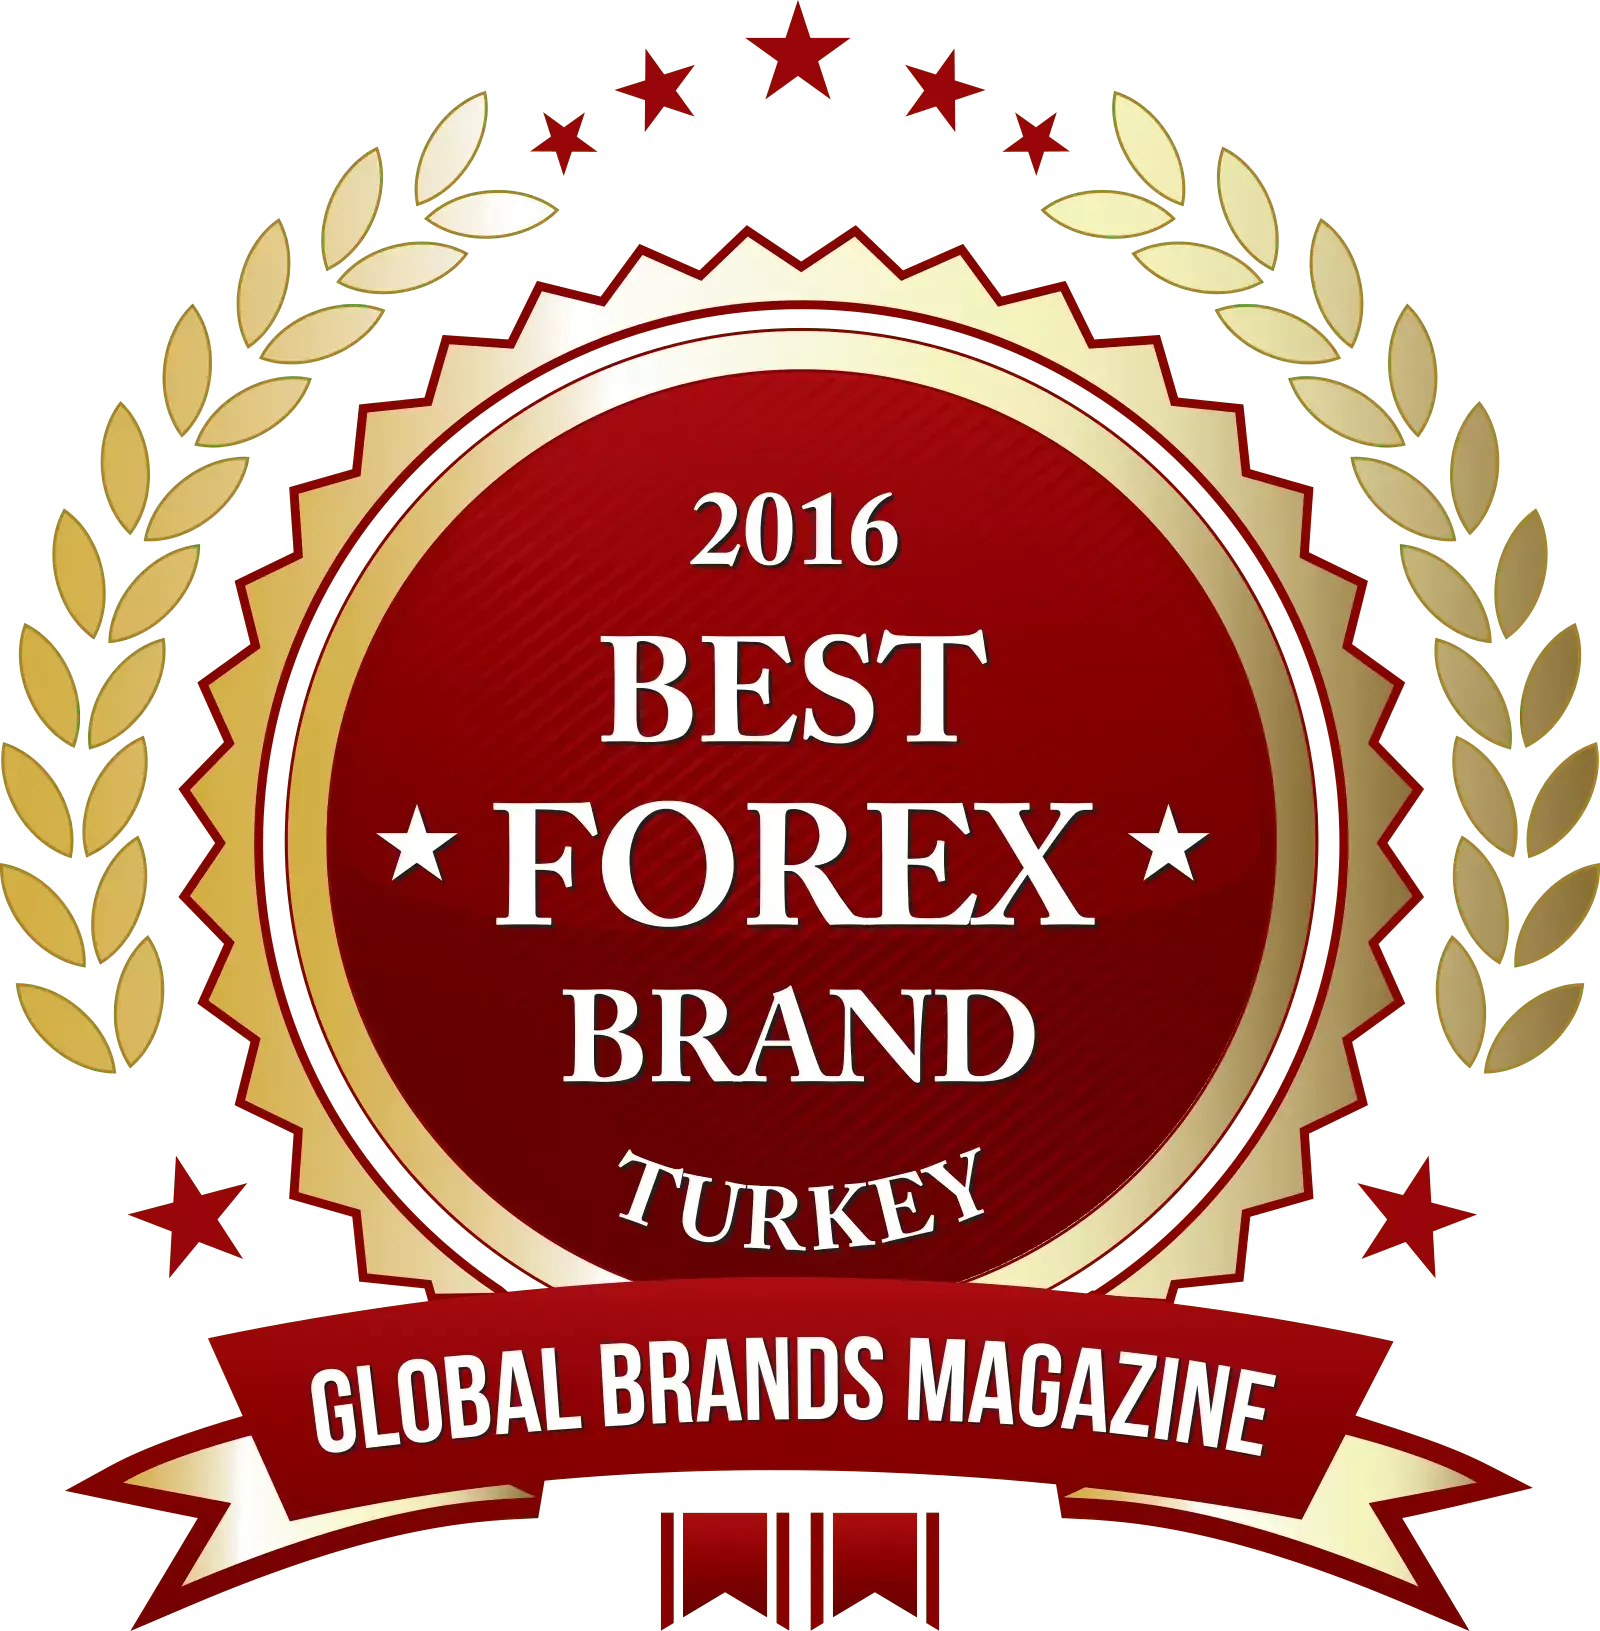 Best Forex Brand 2016 Turkey Global Brands Magazine